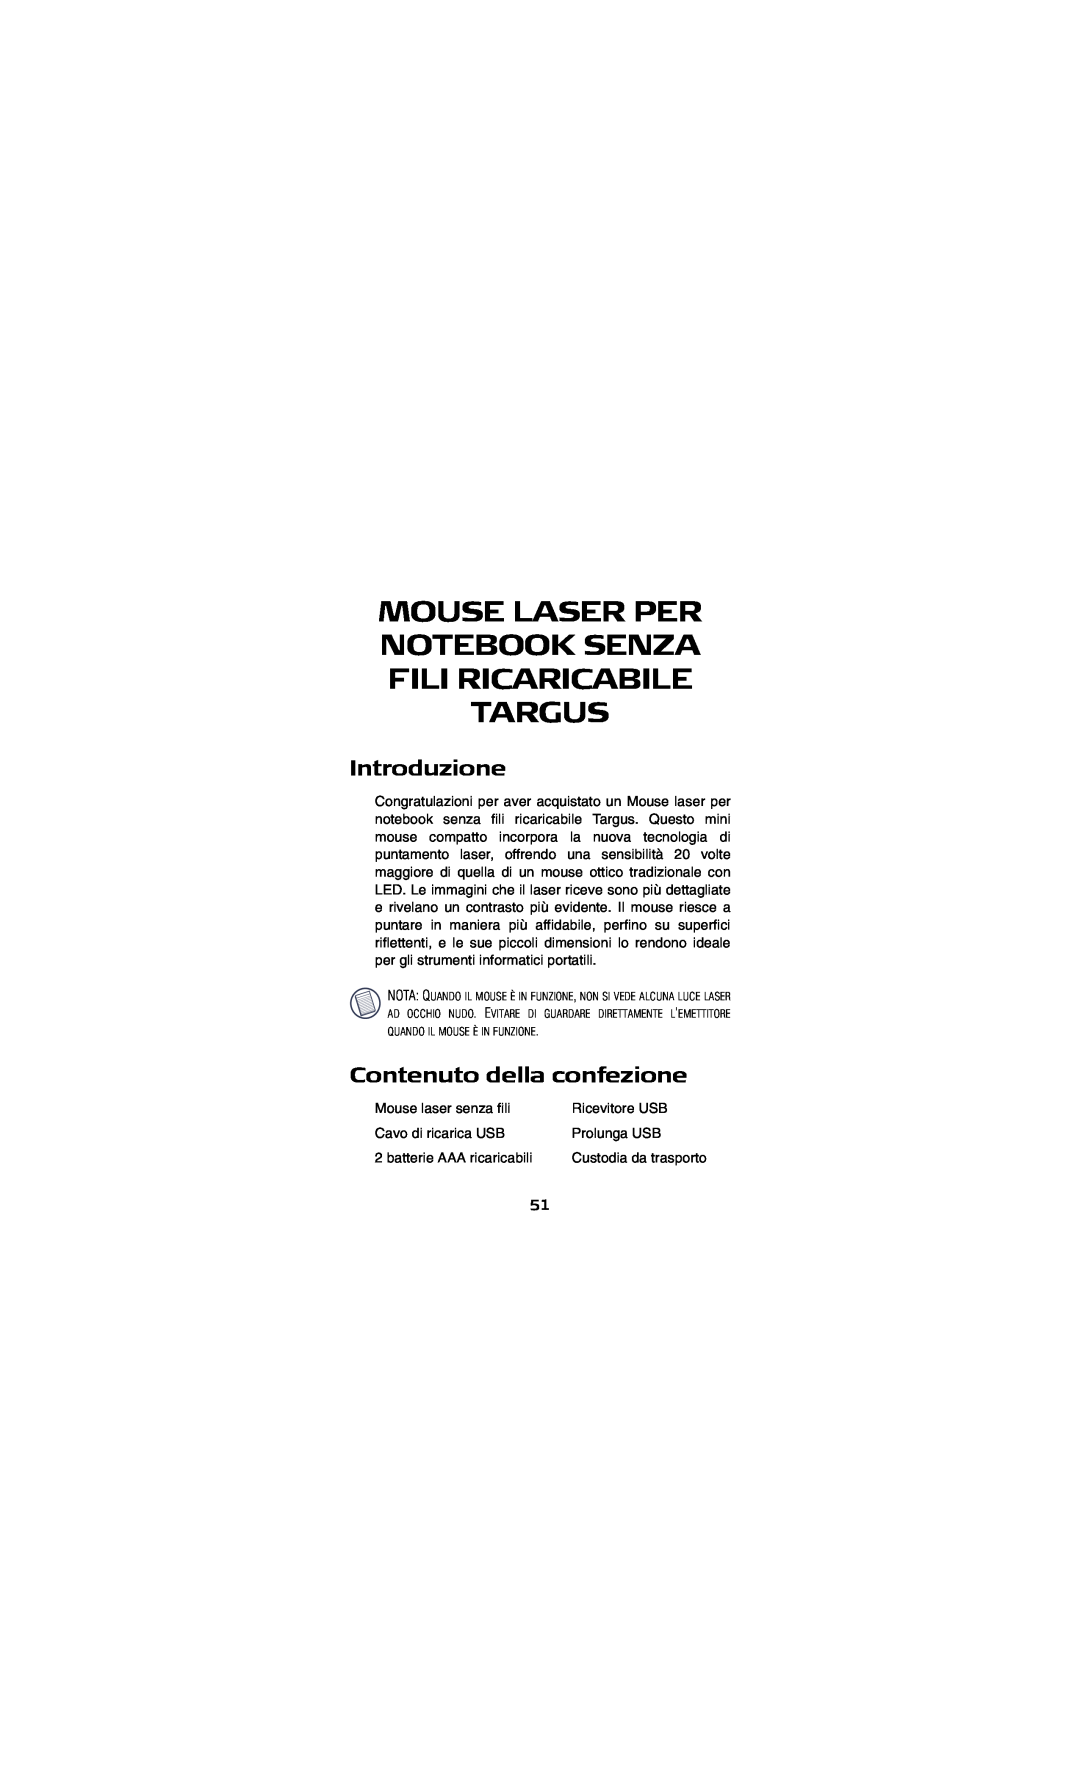 Targus AMW15EU Mouse Laser Per Notebook Senza Fili Ricaricabile Targus, Introduzione, Contenuto della confezione 